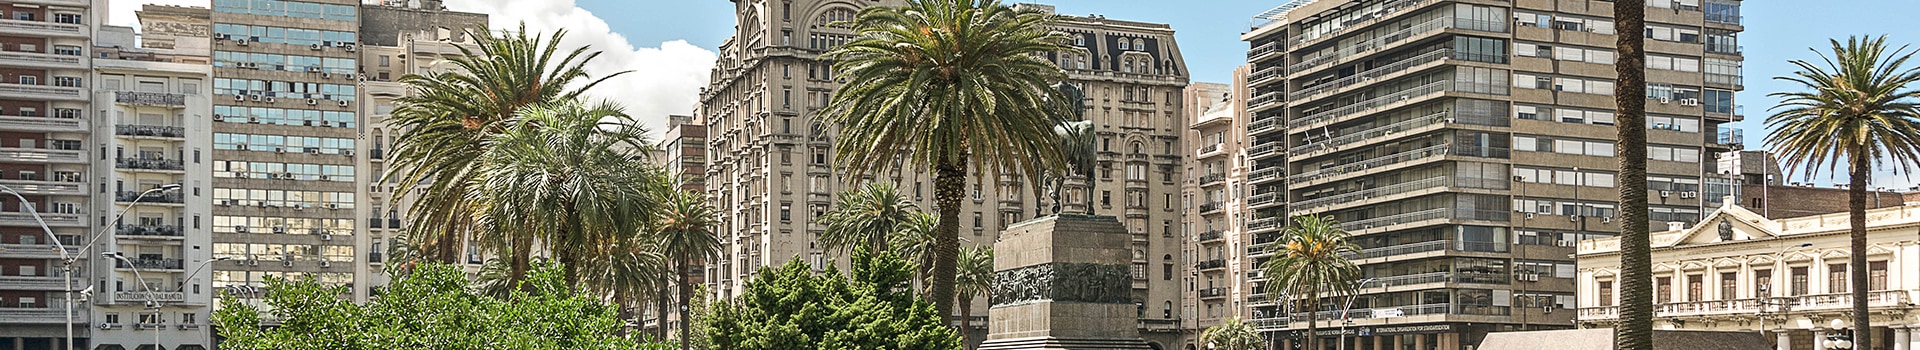 Gran Canaria - Montevideo - carrasco intl